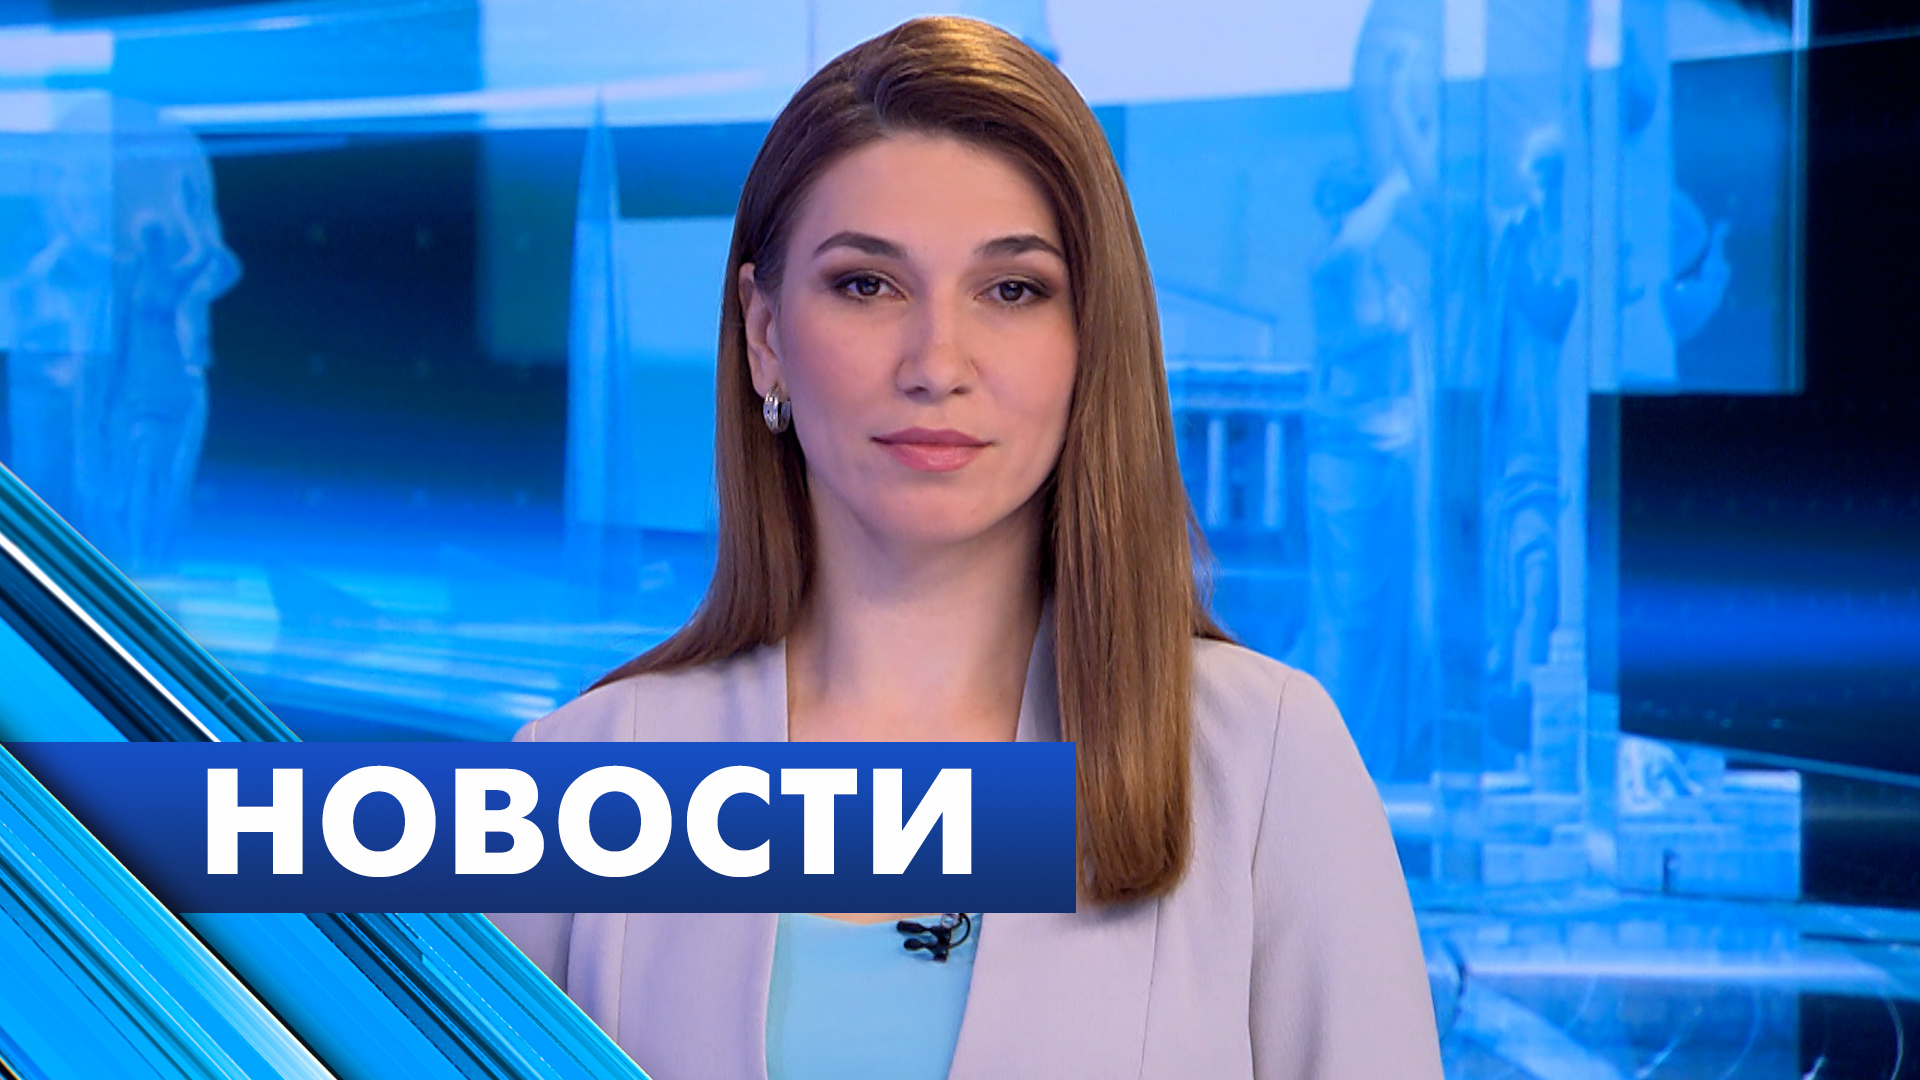 Главные новости Петербурга / 7 мая